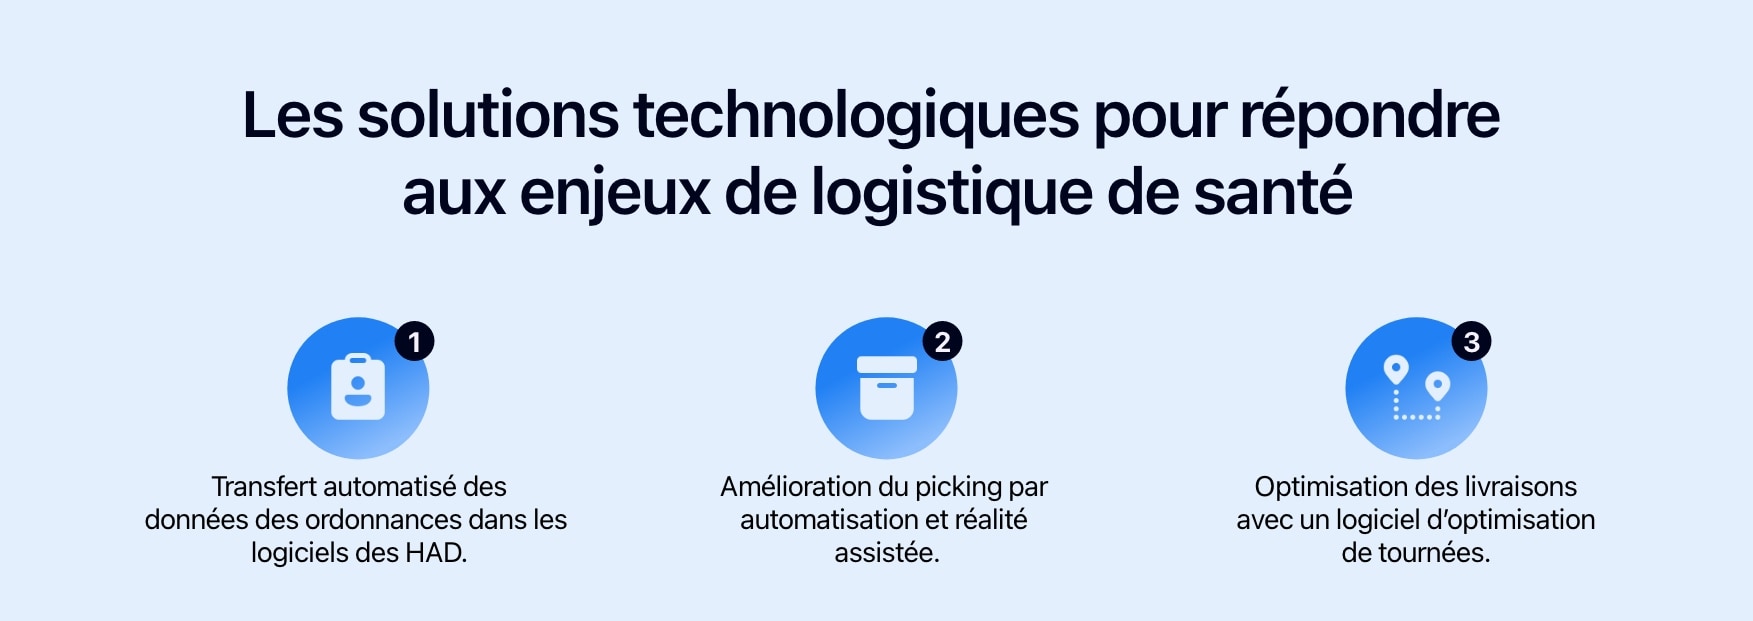 Schéma présentant les solutions technologiques pour répondre aux enjeux de logistique de santé.